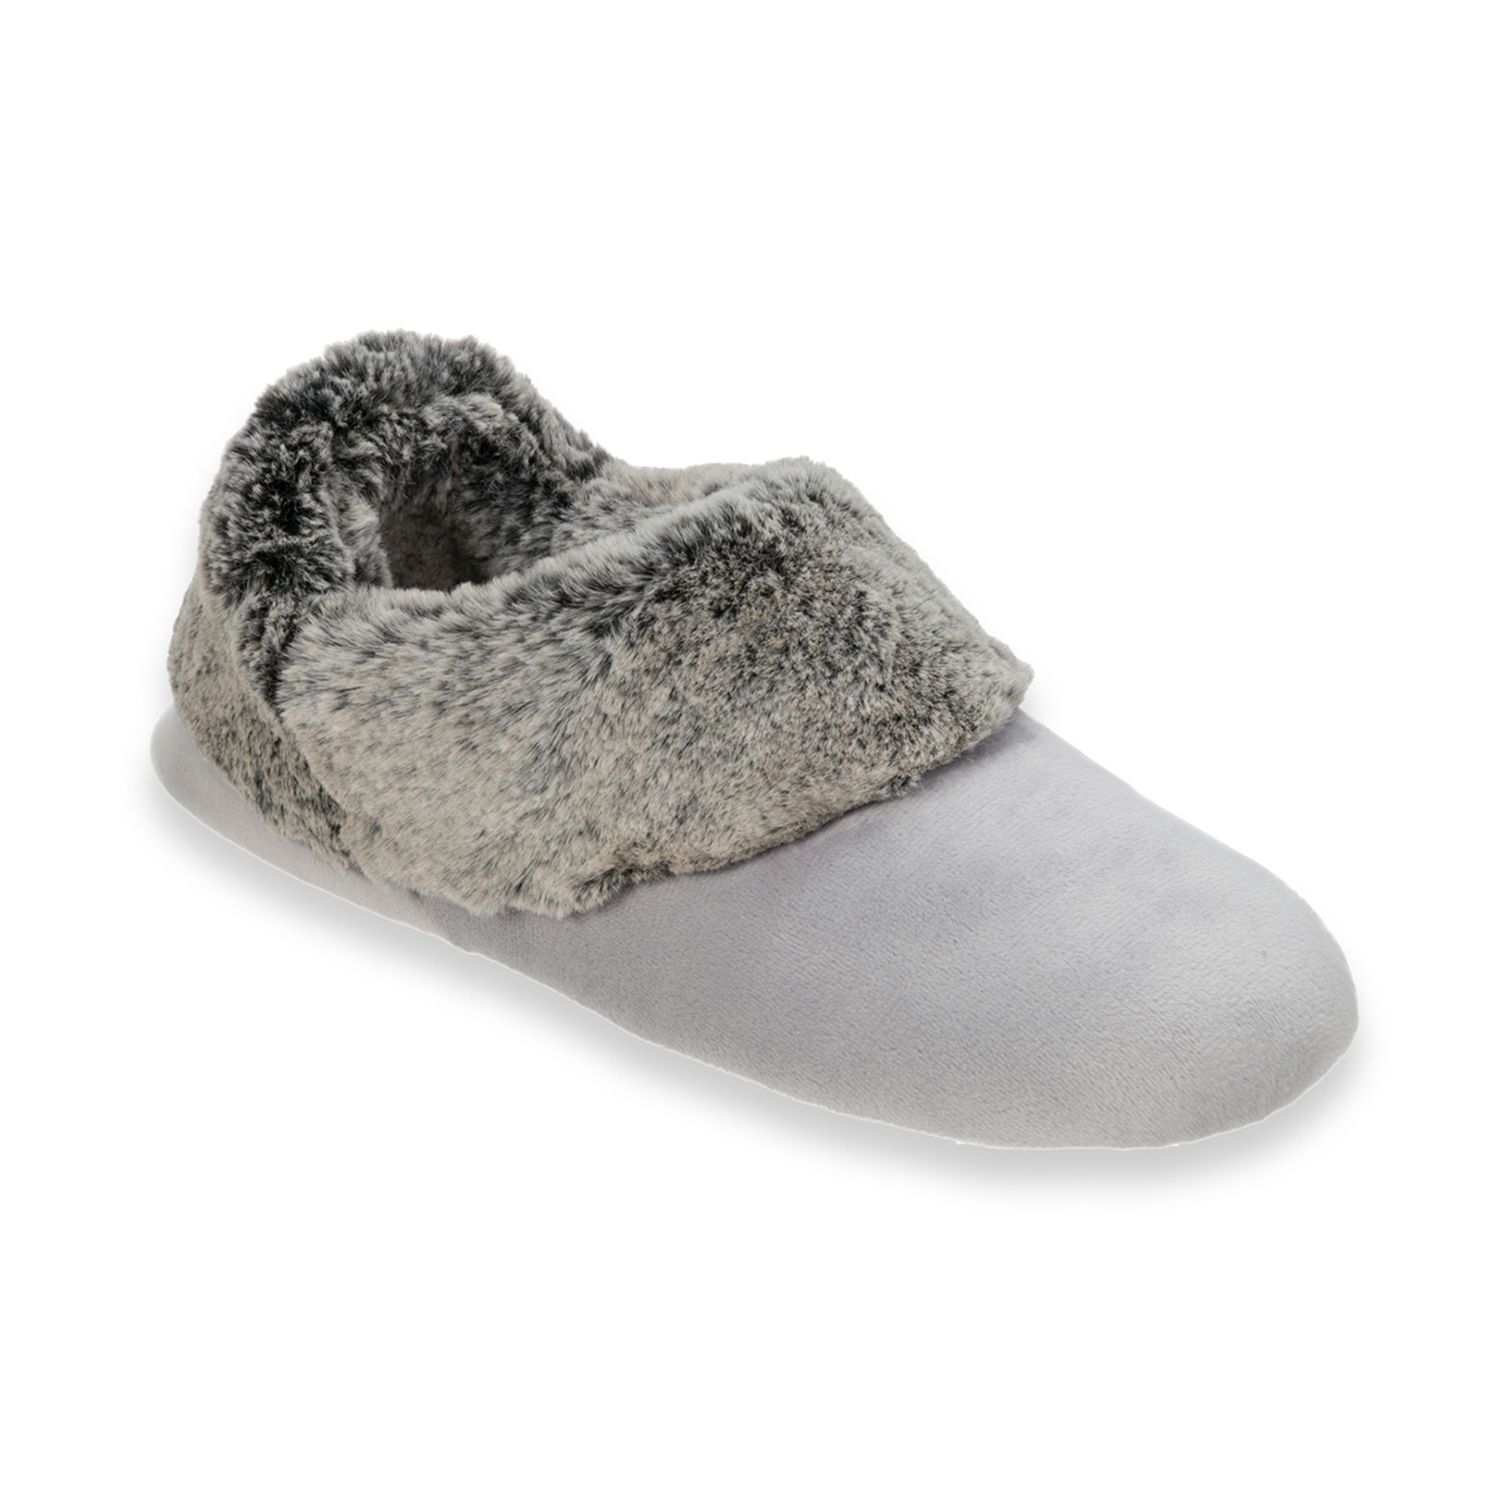 dearfoam velour bootie slippers